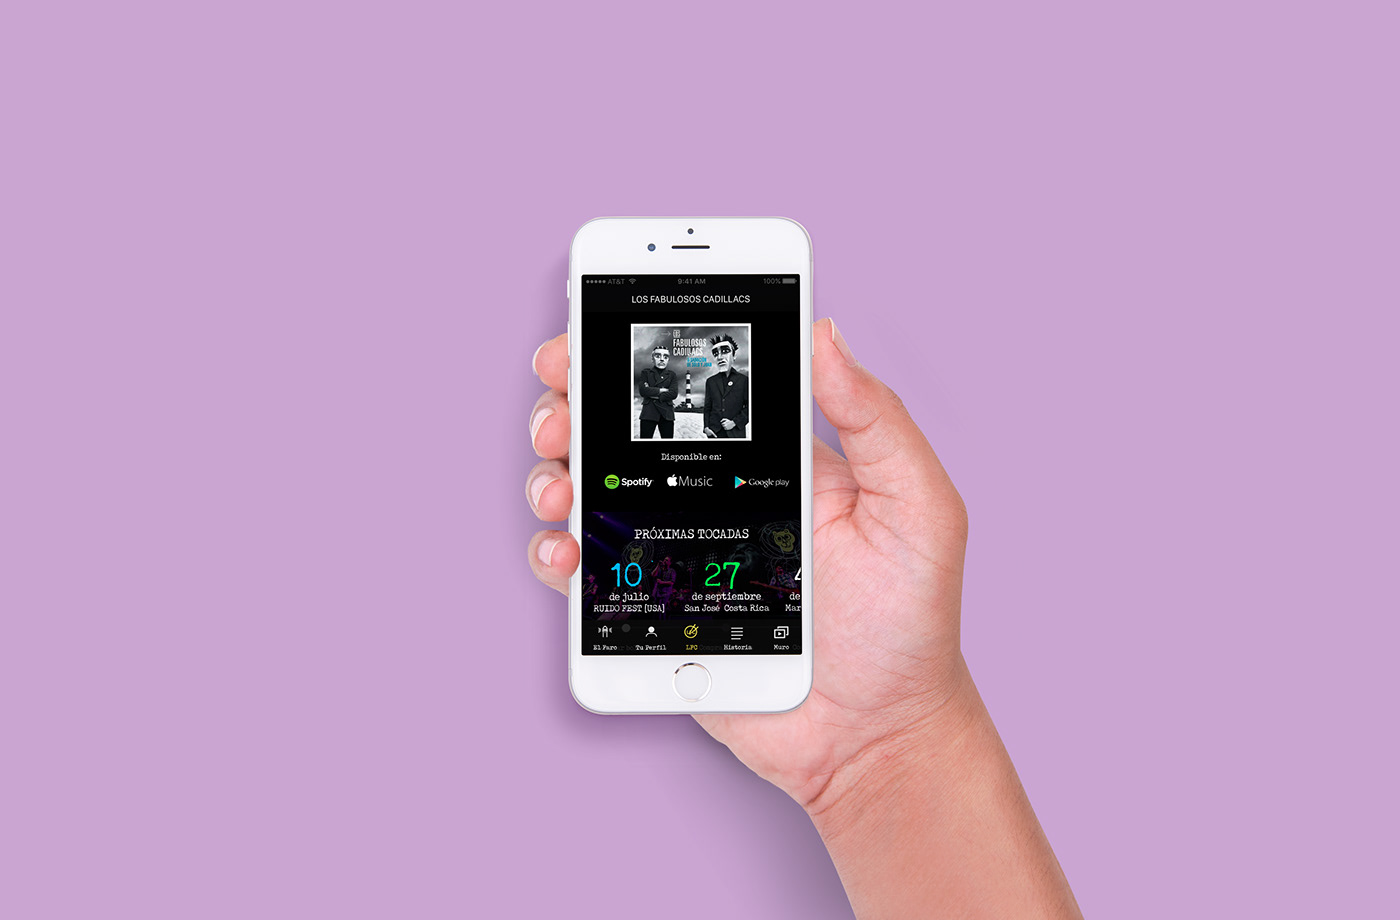 ads app app design designapps estrategia digital  fabulosos cadillacs Interface mobile Sony Music UX design